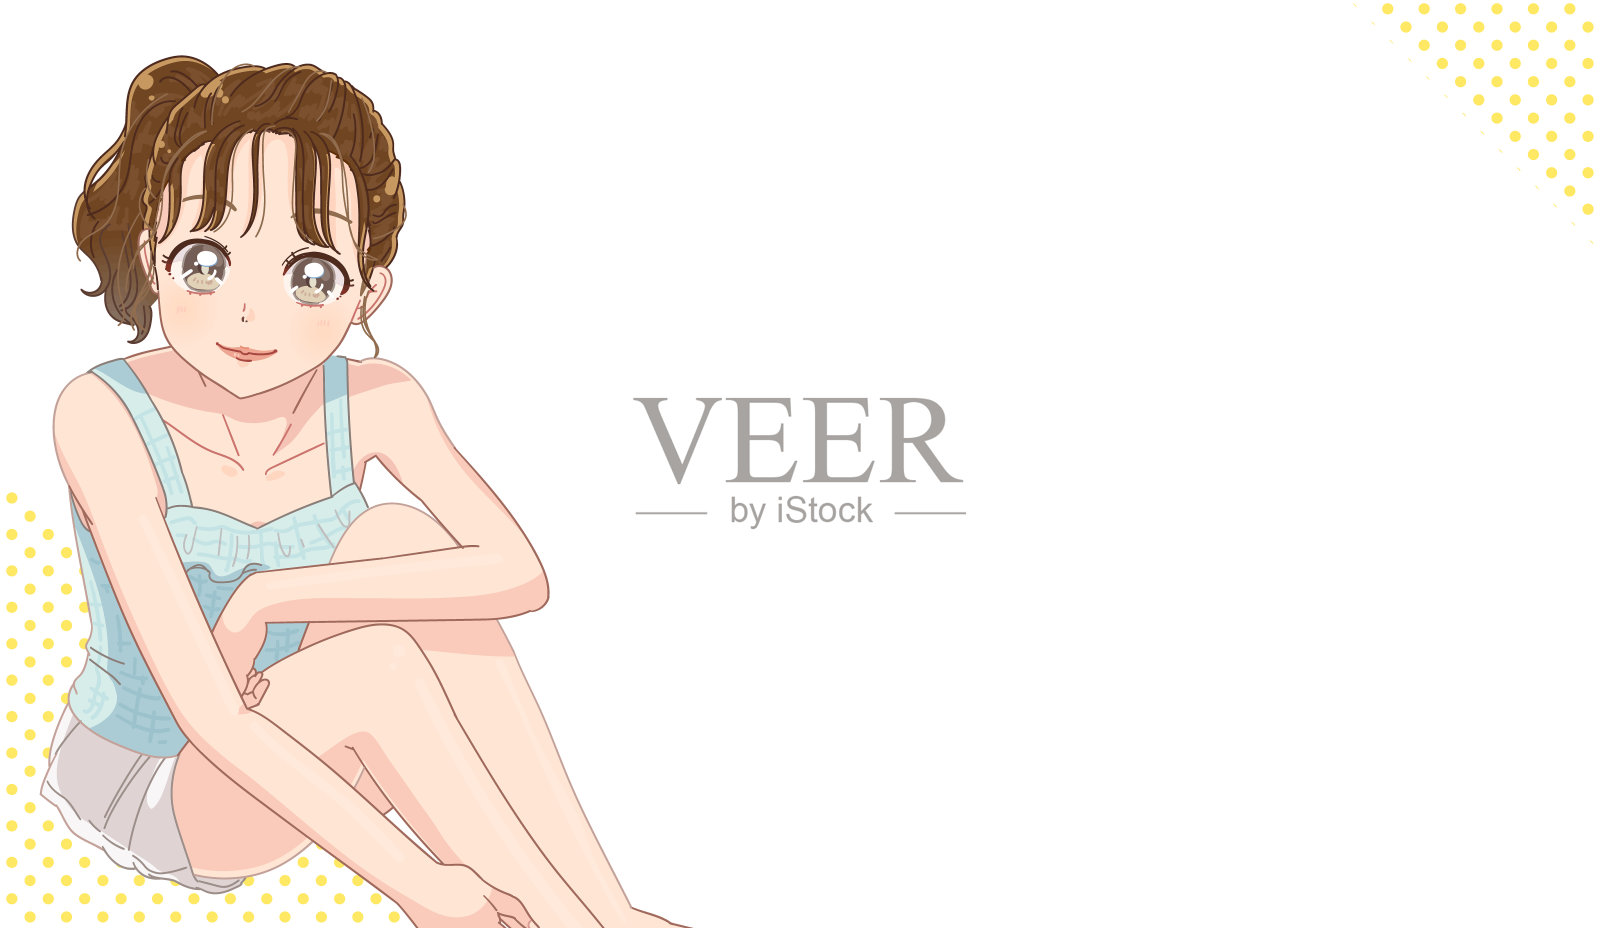 一个脱毛和白皙皮肤的漂亮女人的日本动画插图。插画图片素材